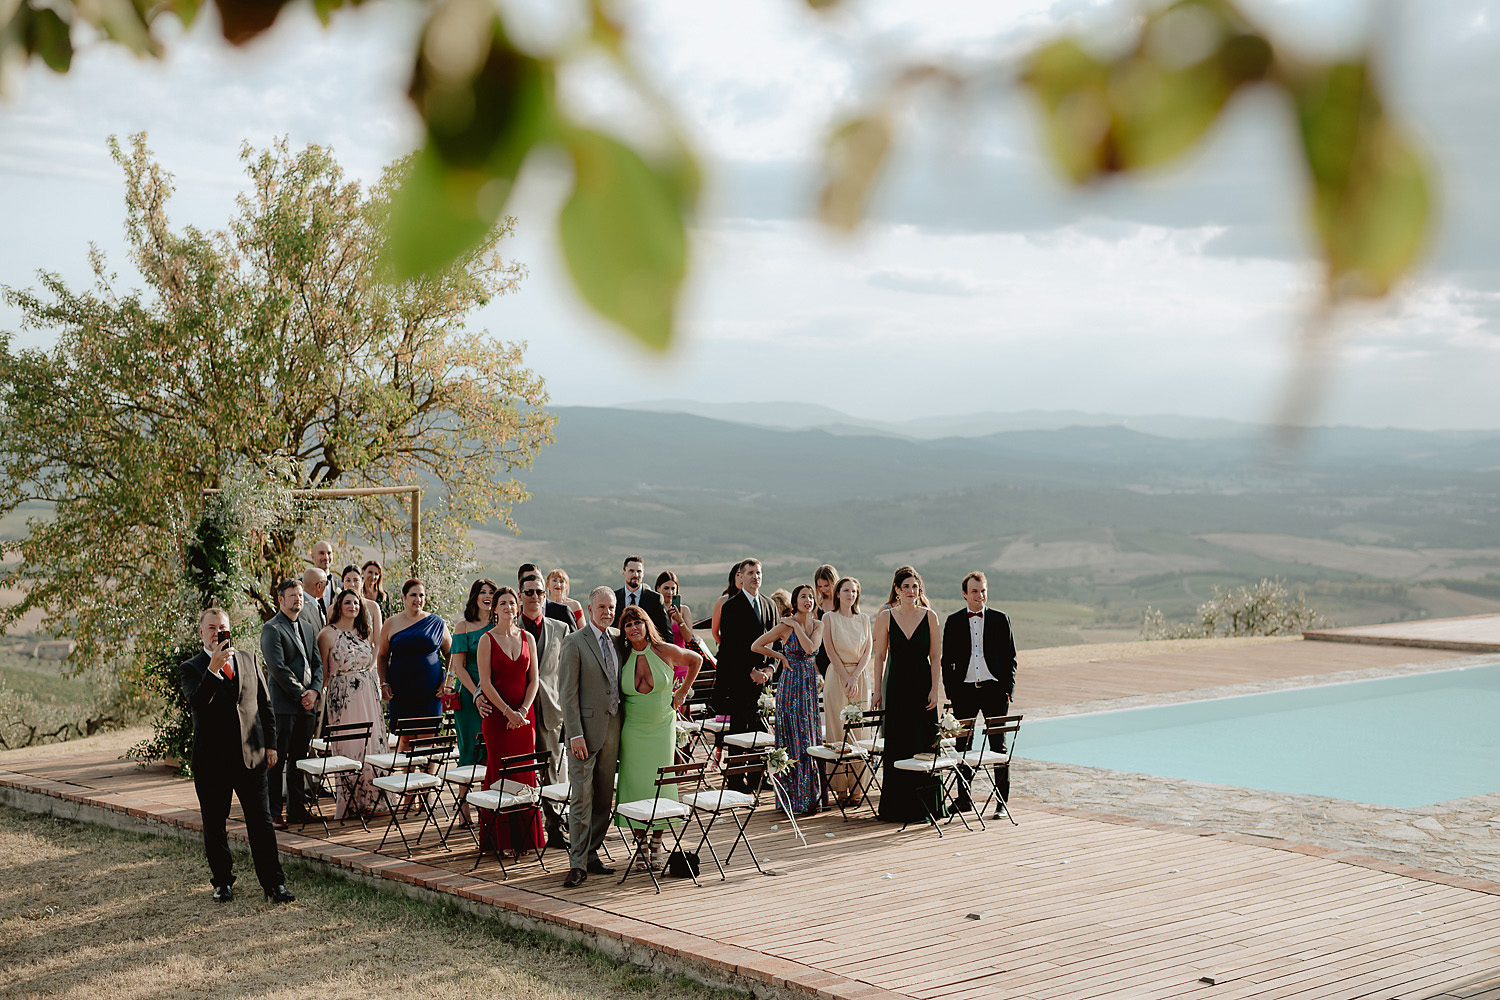 intimate micro wedding in tuscany rustic outdoor ceremony bride dad arrival photos